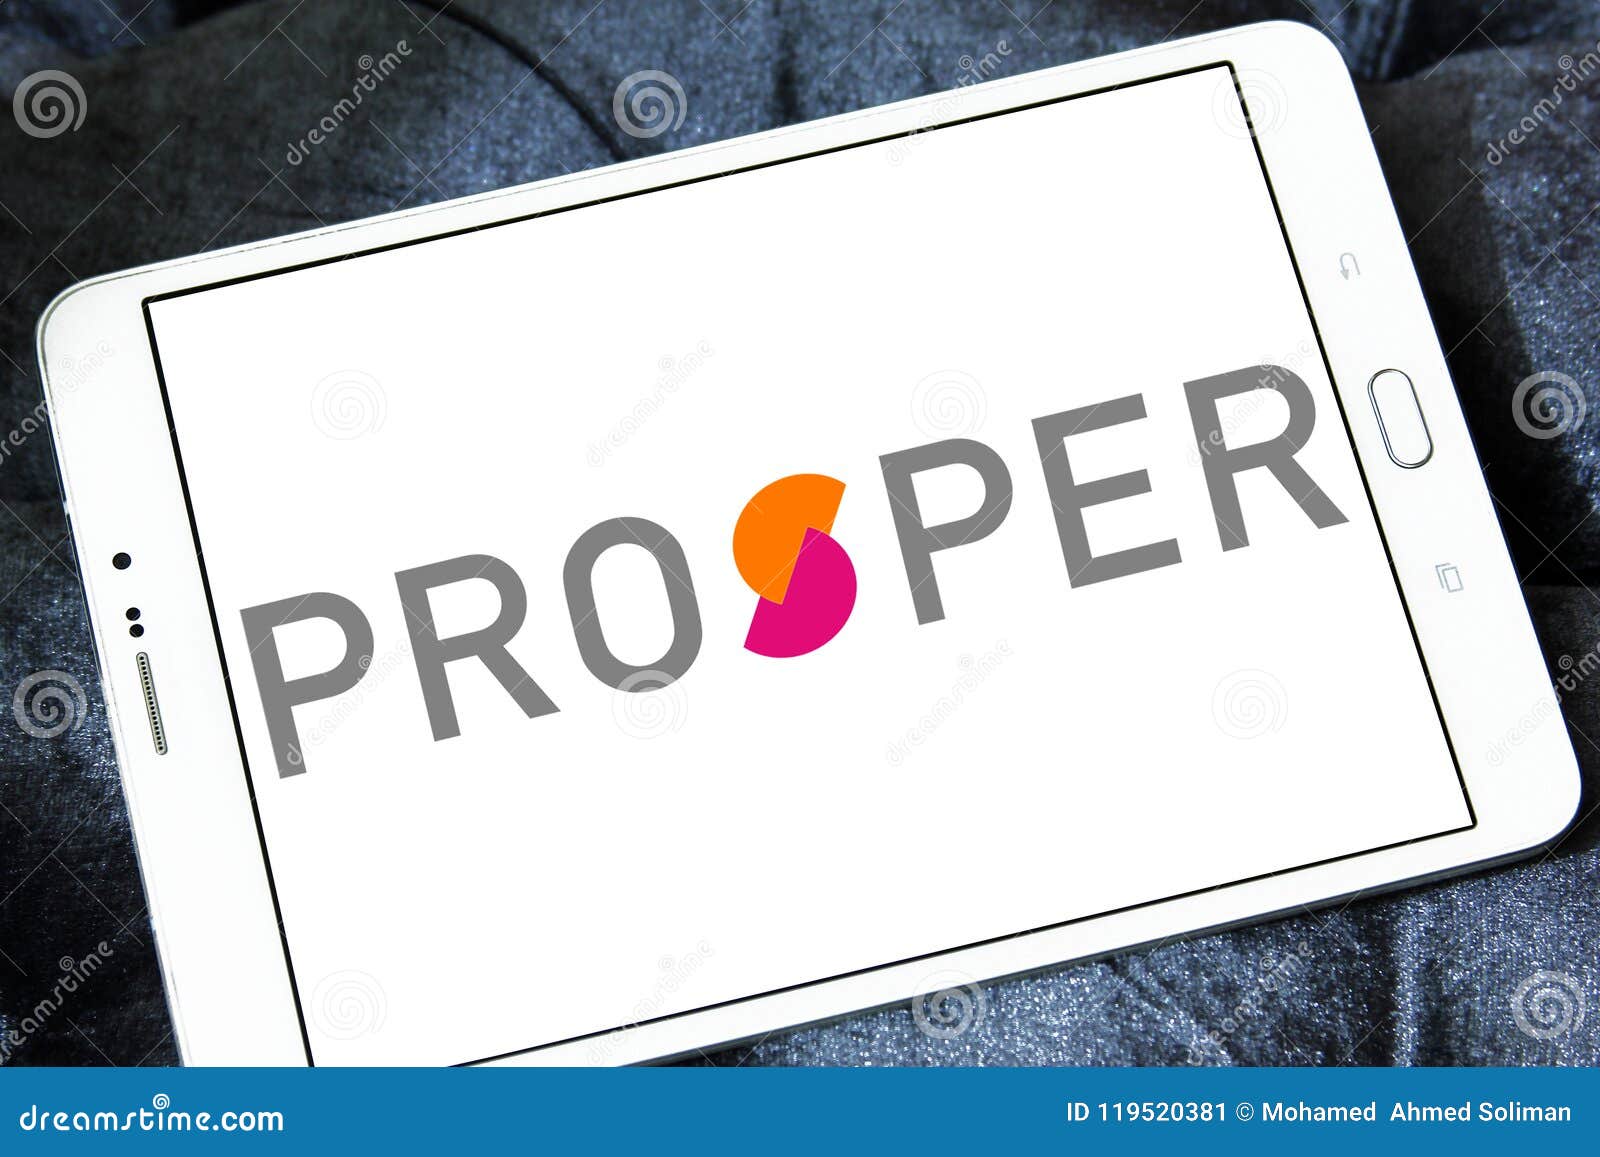 Prosper | Lettering, Business card design, Logo images